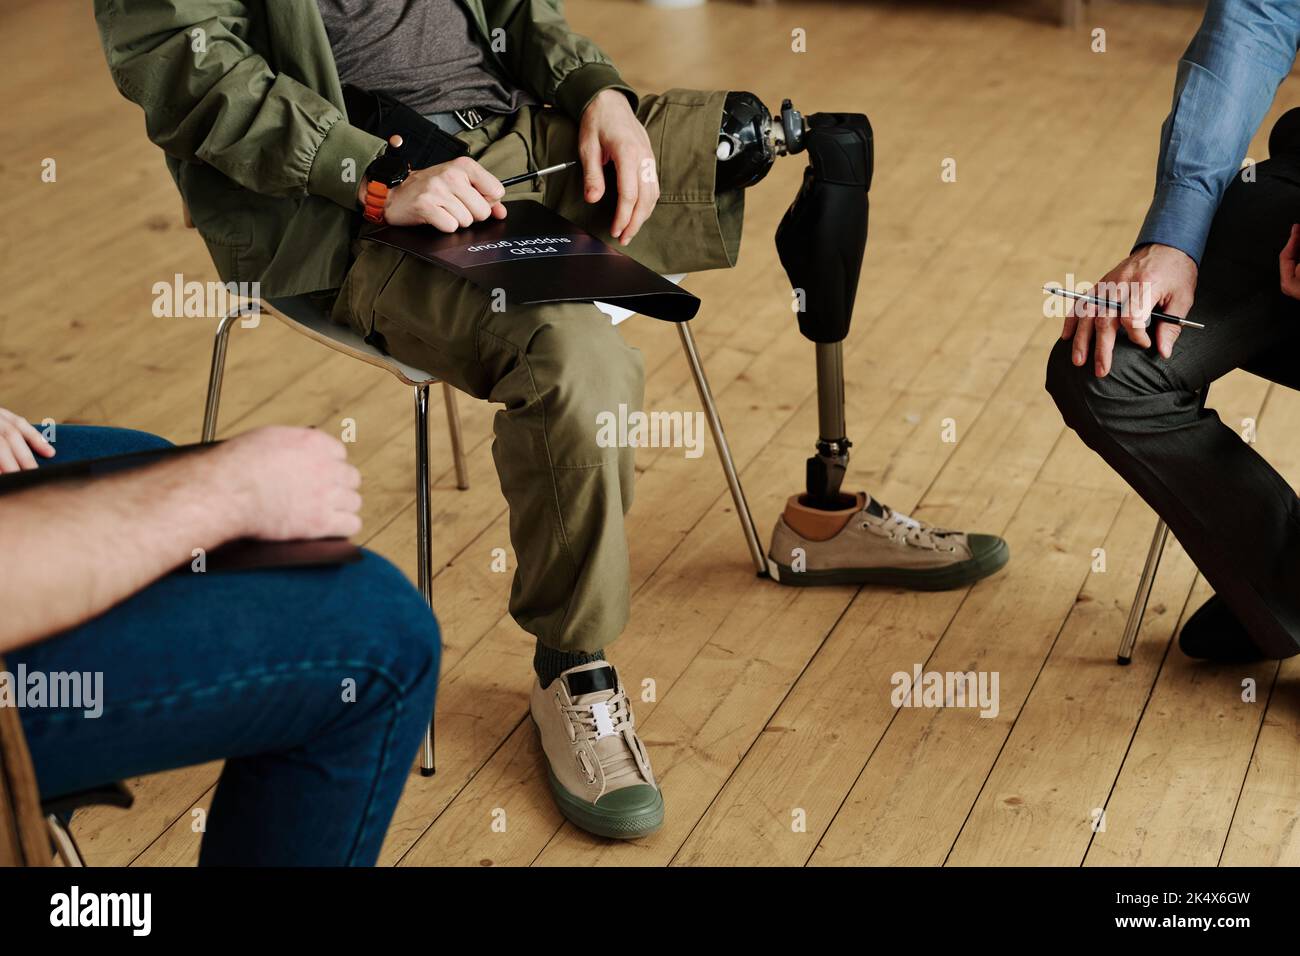 Nahaufnahme der Beine eines jungen Mannes mit körperlicher Behinderung, der unter anderen Männern auf einem Stuhl sitzt, während er über ihre psychischen Probleme diskutiert Stockfoto